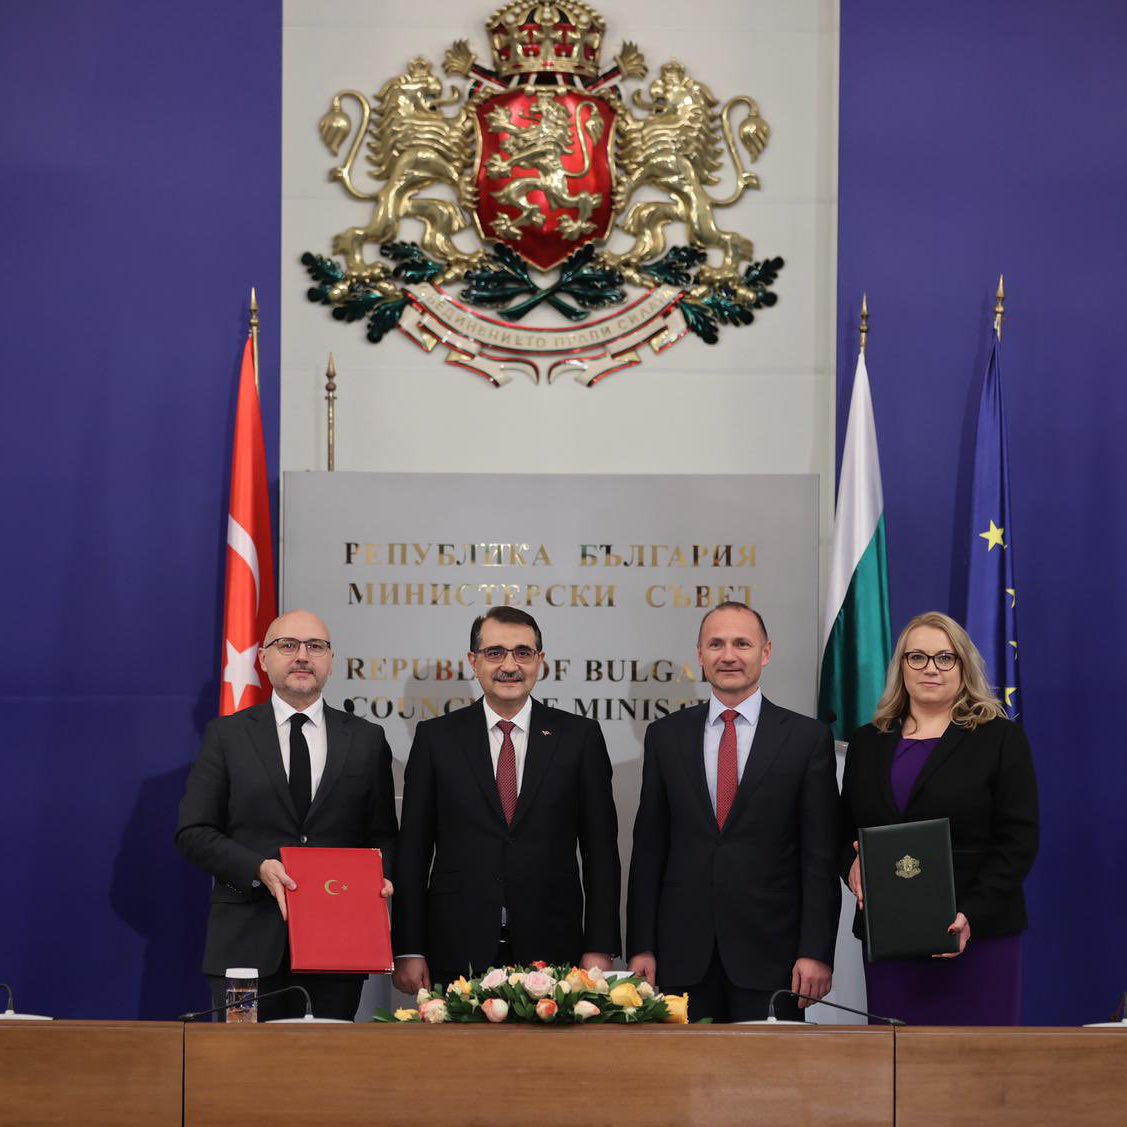 Türkiye’nin doğalgaz ticaret merkezi olma yolunda stratejik bir adımı geride bıraktık. Hayırlı Olsun Türkiye ile Bulgaristan arasında yılda yaklaşık 1,5 milyar metreküpe kadar doğalgaz transferi sağlayacak işbirliği anlaşması imzalandı.